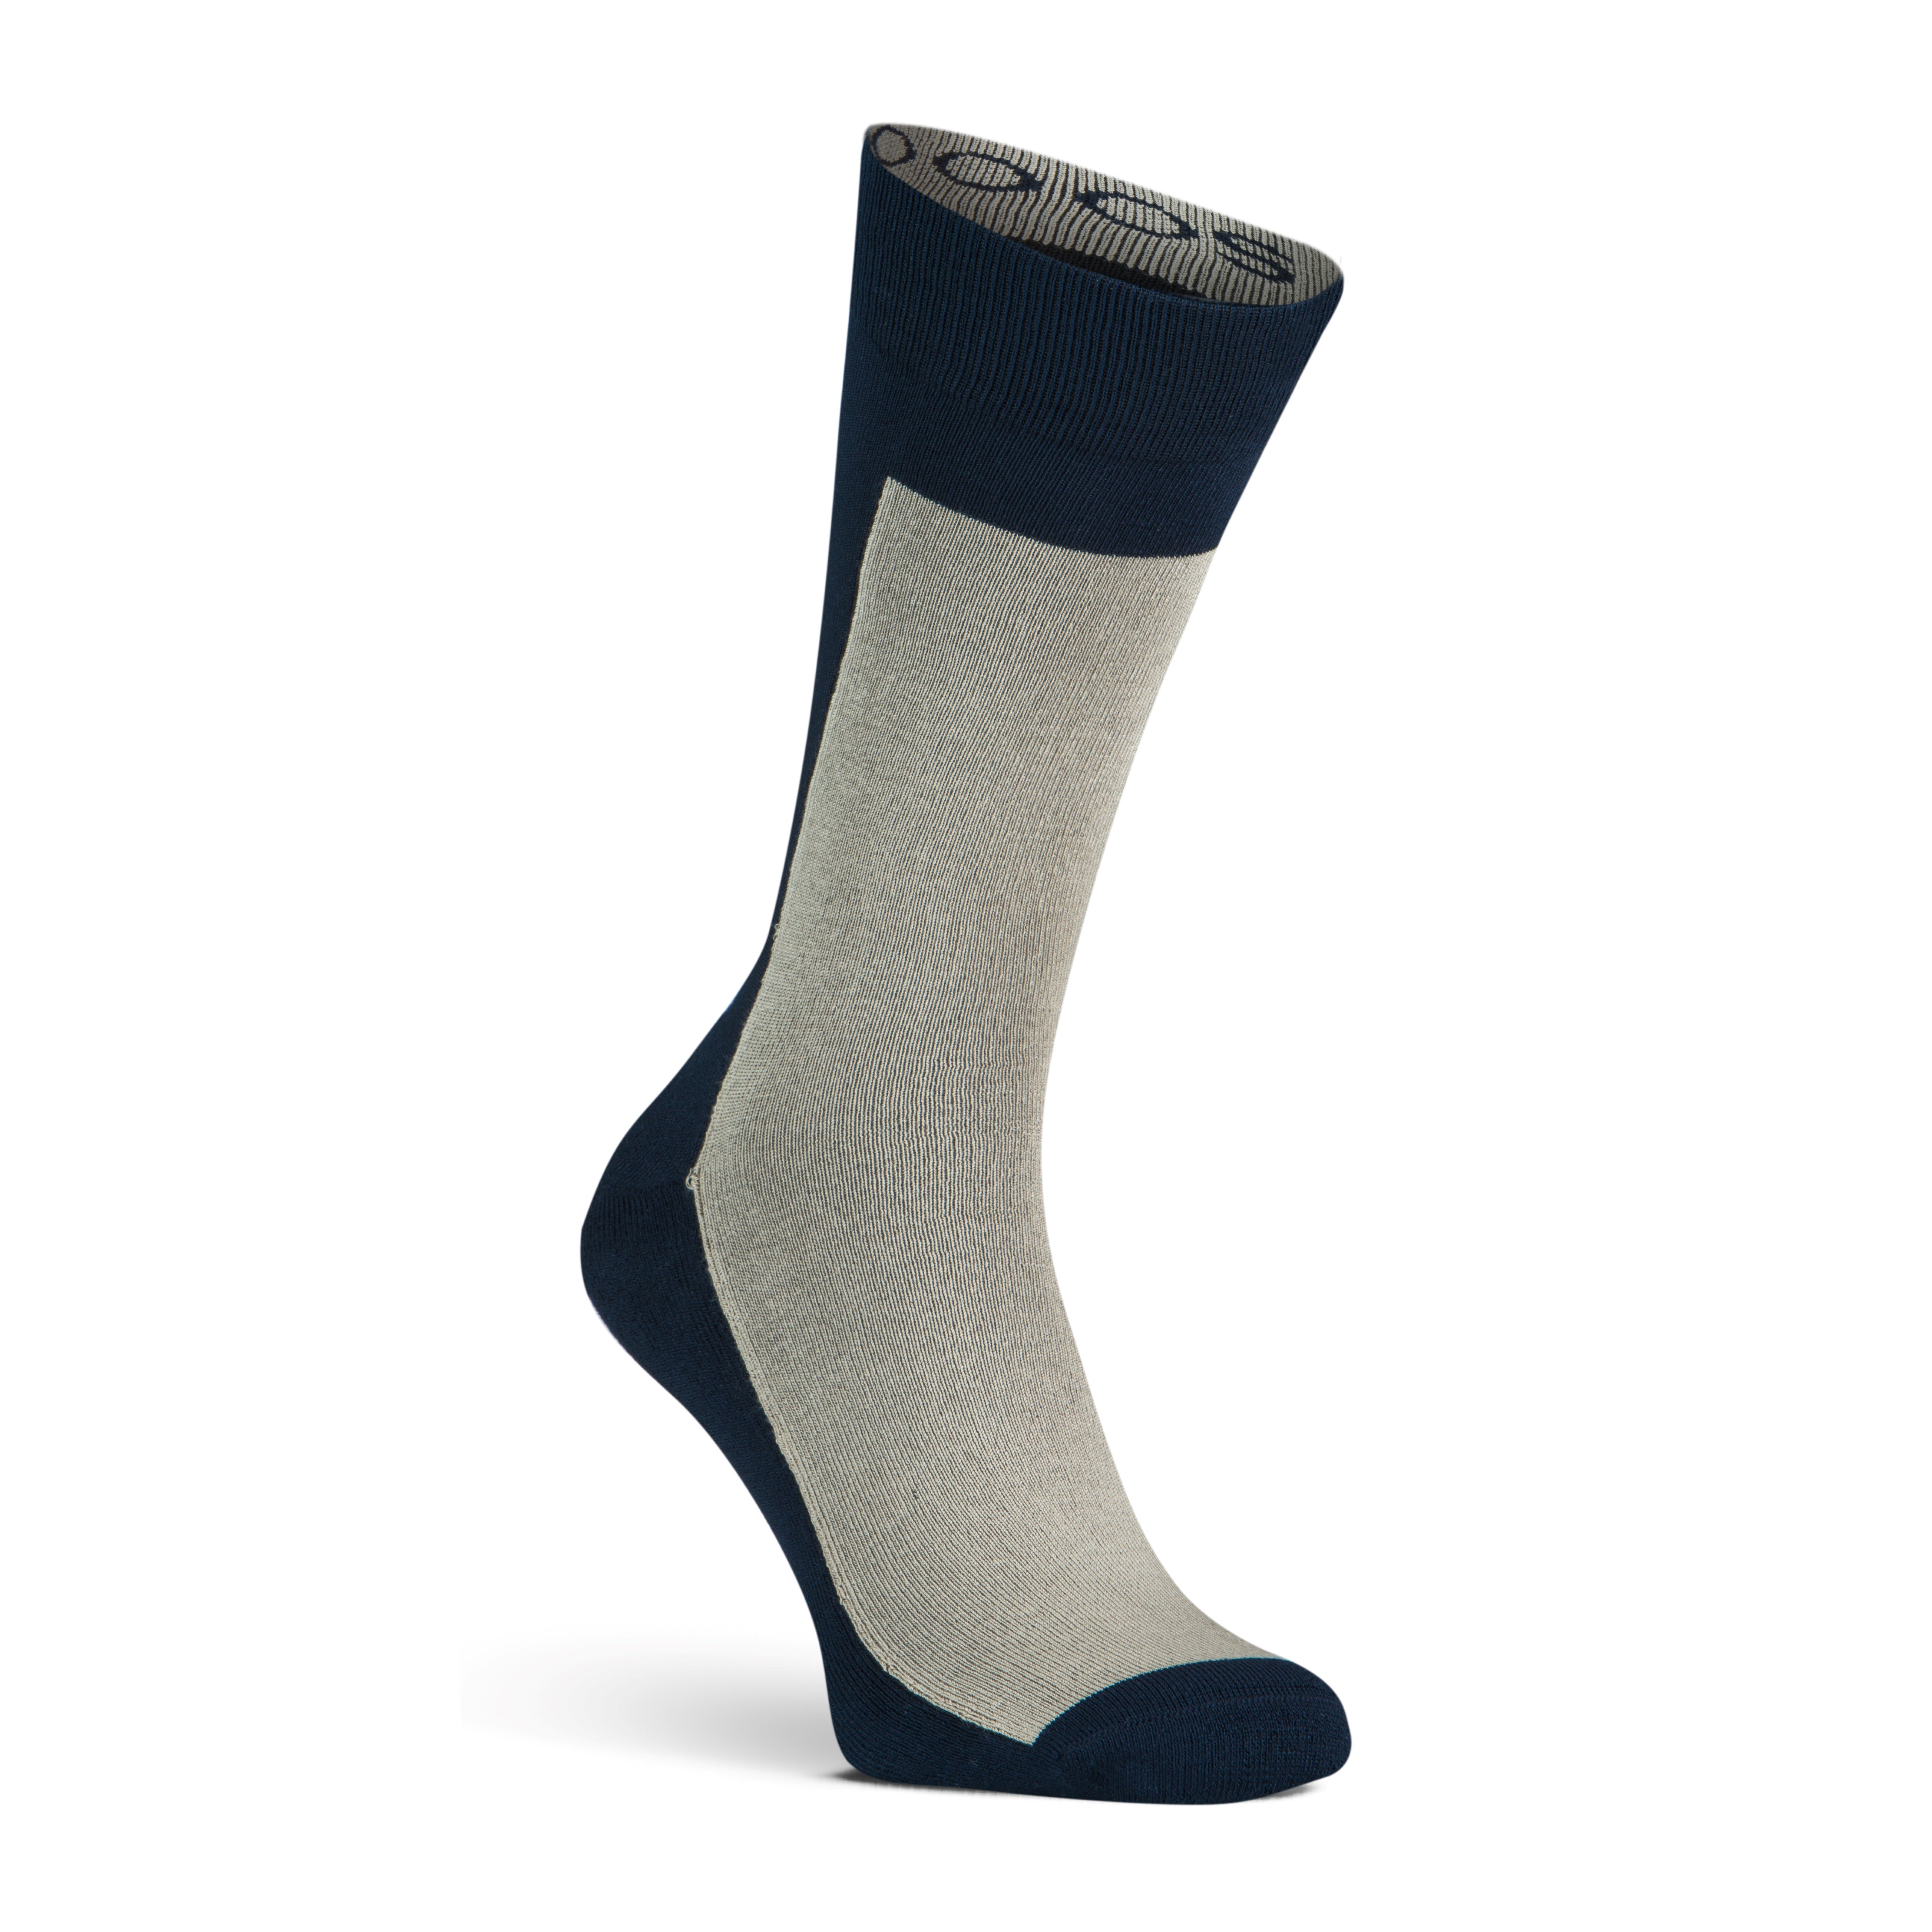 New York men's socks Beige